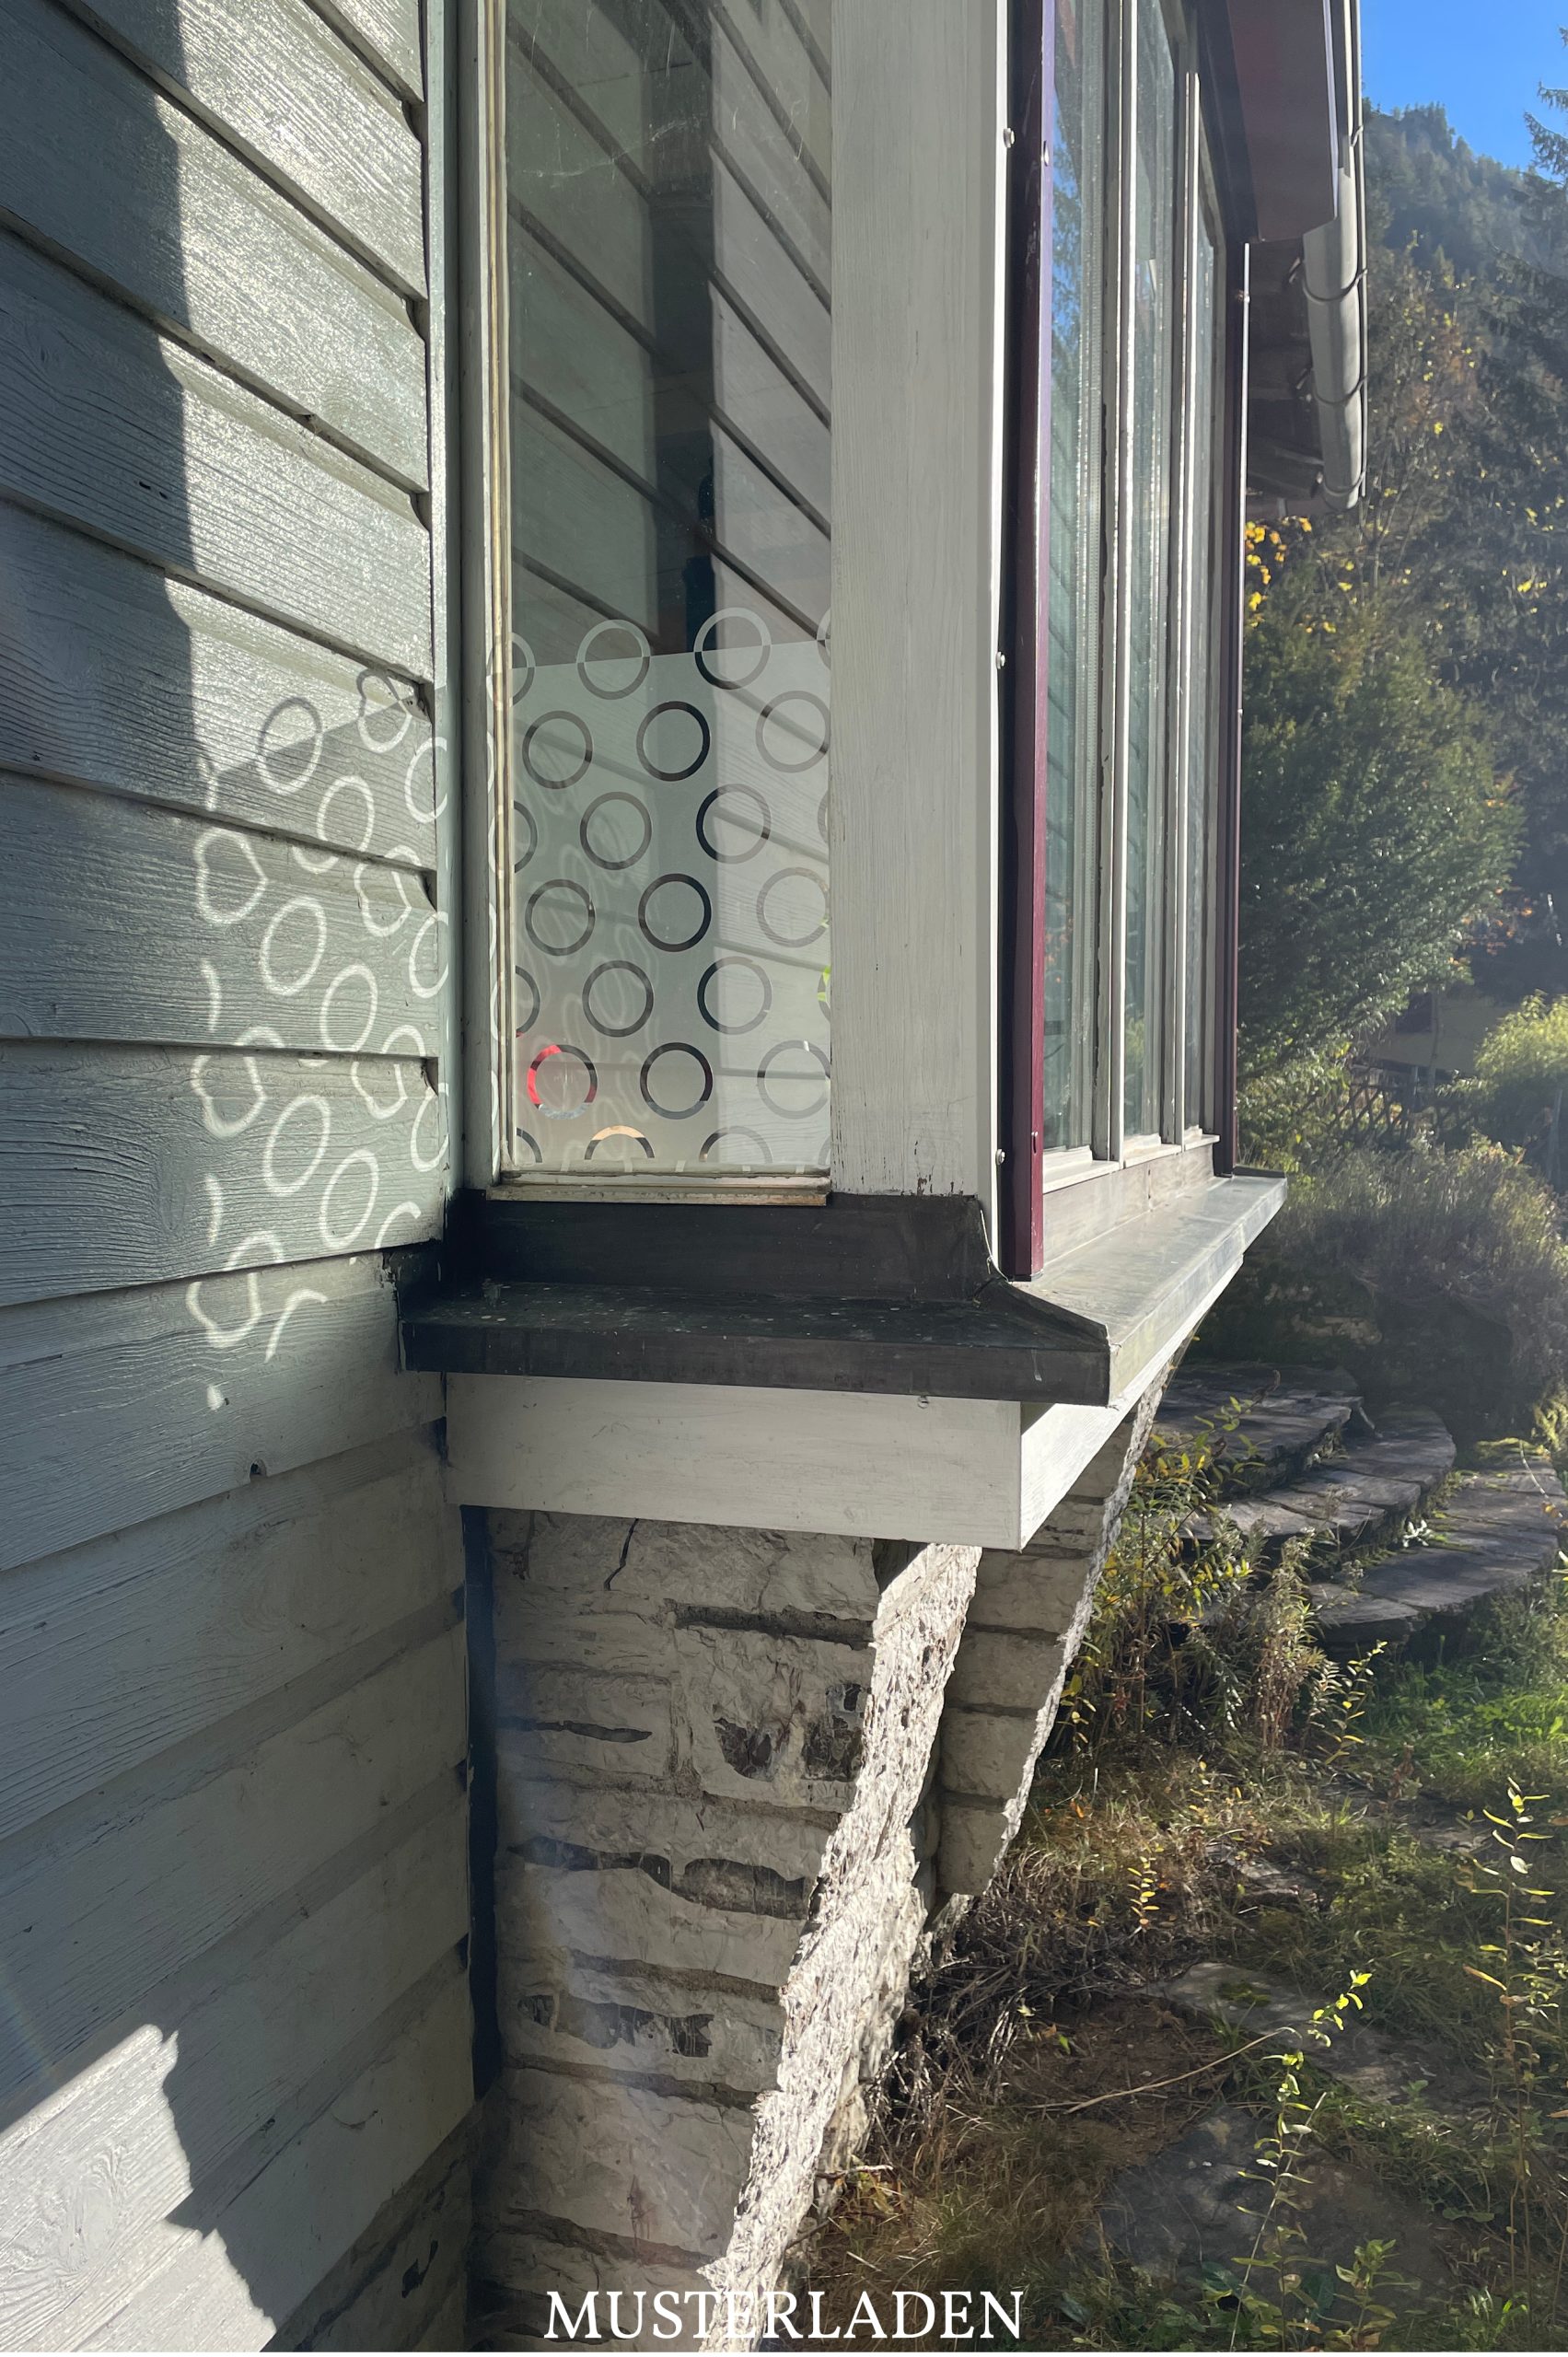 Blick von außen auf Fenster mit Sichtschutzfolie mit geometrischem Muster. Die Sonne erzeugt Schattenspiele des Motivs auf der Holzfassade.